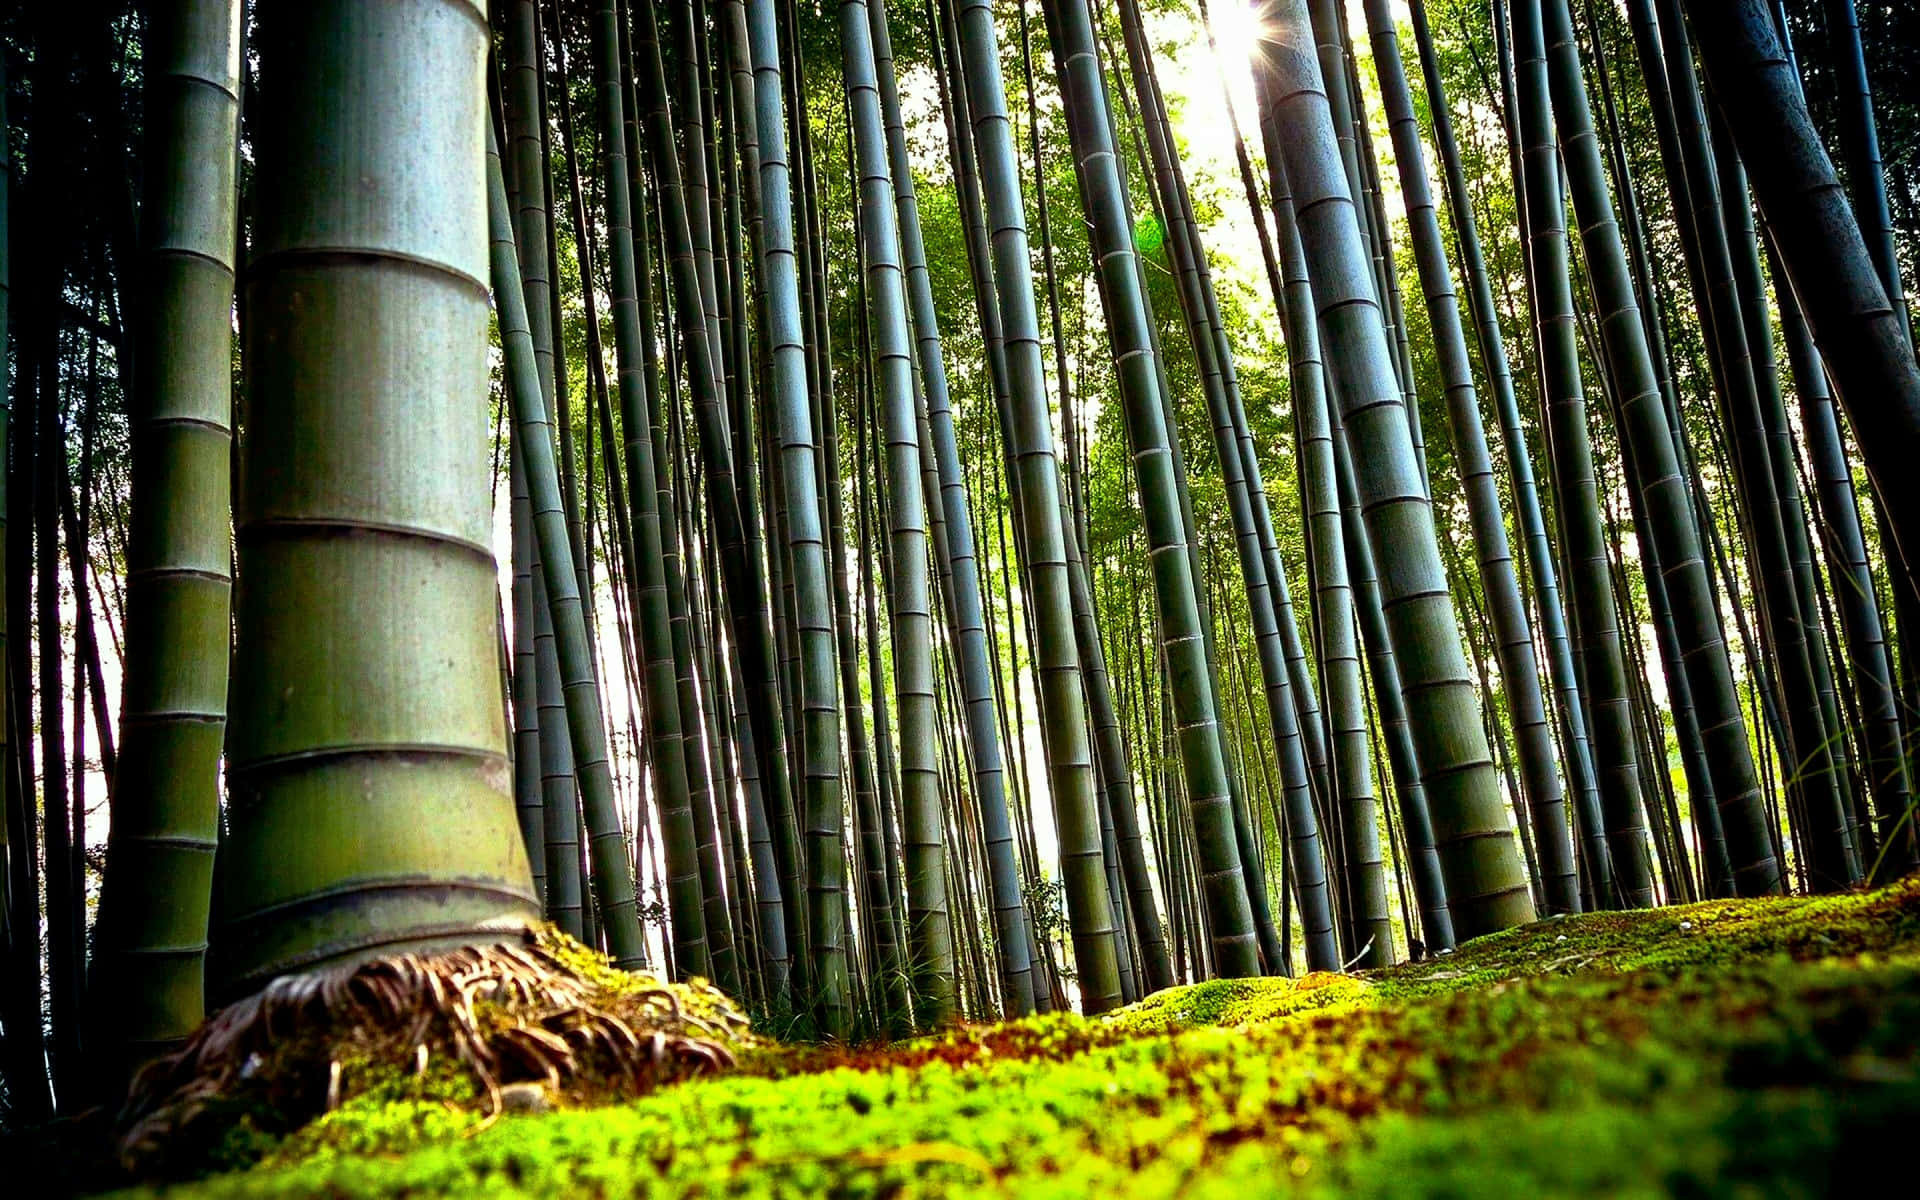 Et fredeligt udsyn af et bambusskov. Wallpaper